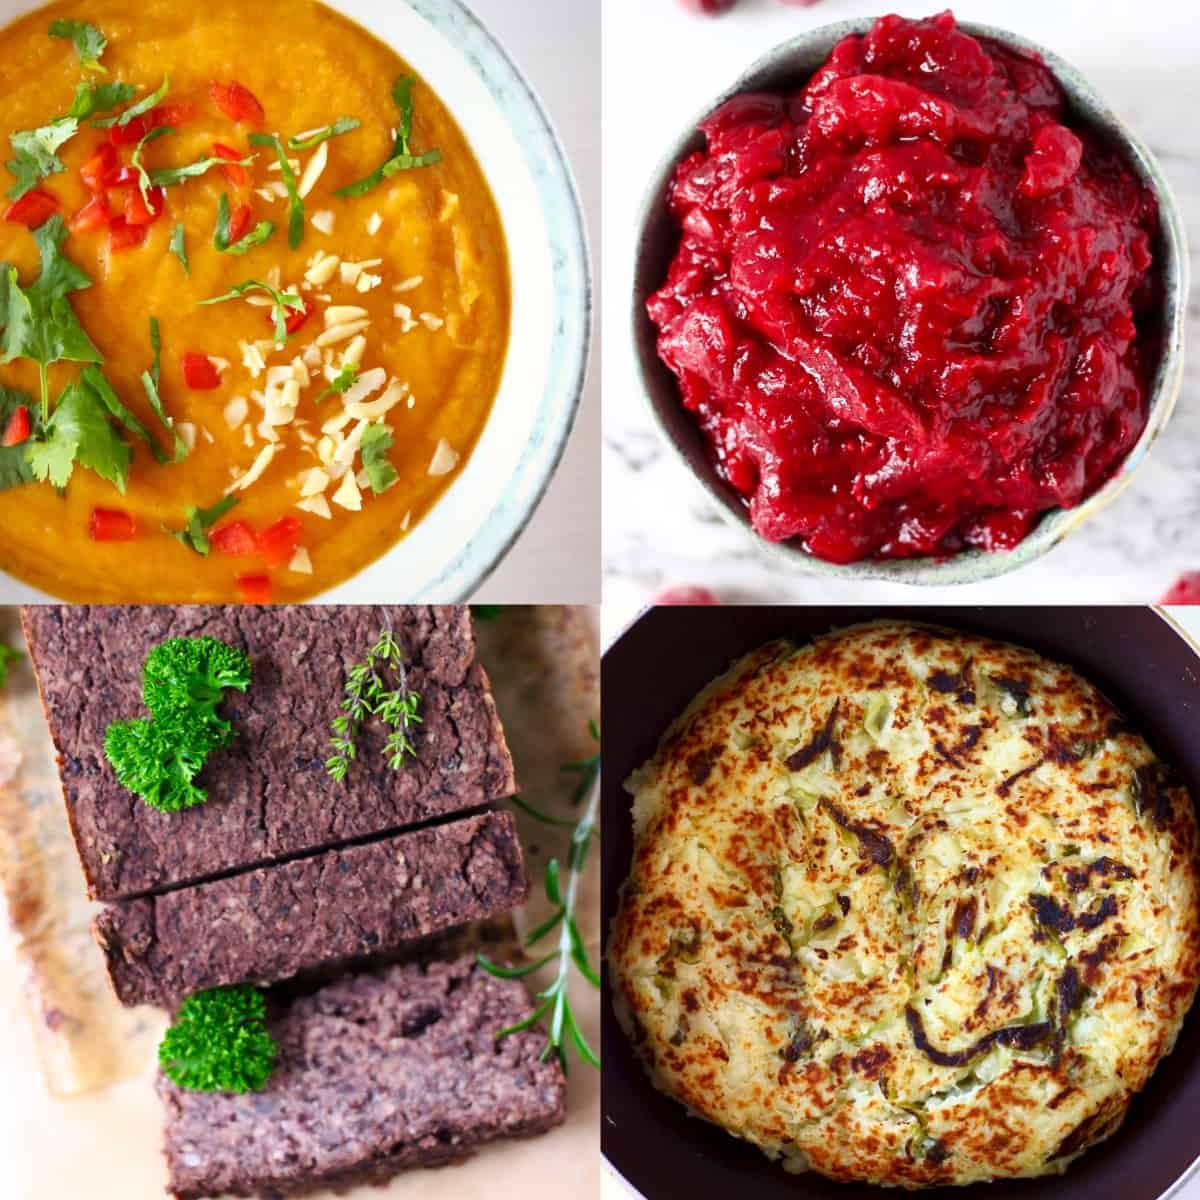 Un collage de cuatro fotos sobrantes veganas del Día de Acción de Gracias